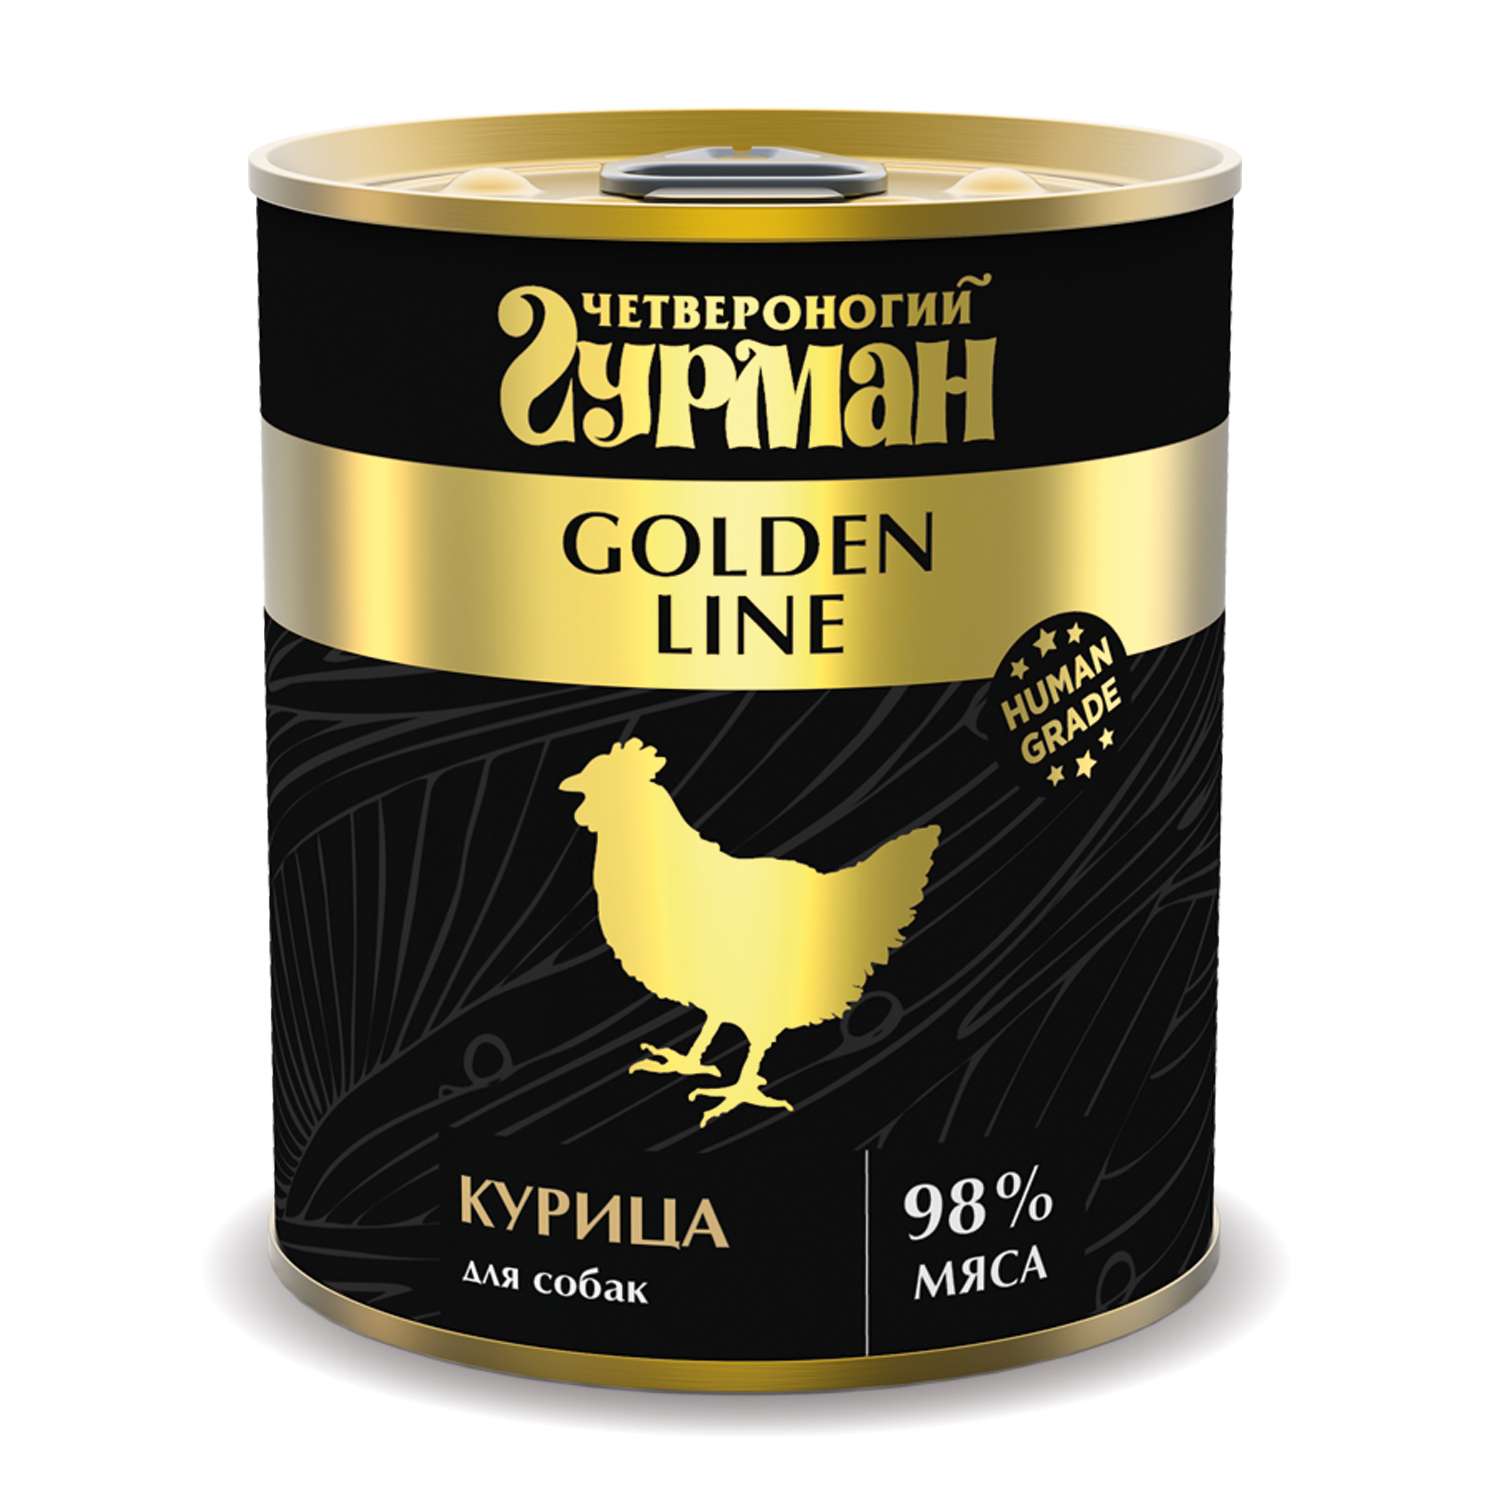 Корм для собак Четвероногий Гурман Golden курица натуральная в желе 340г - фото 1